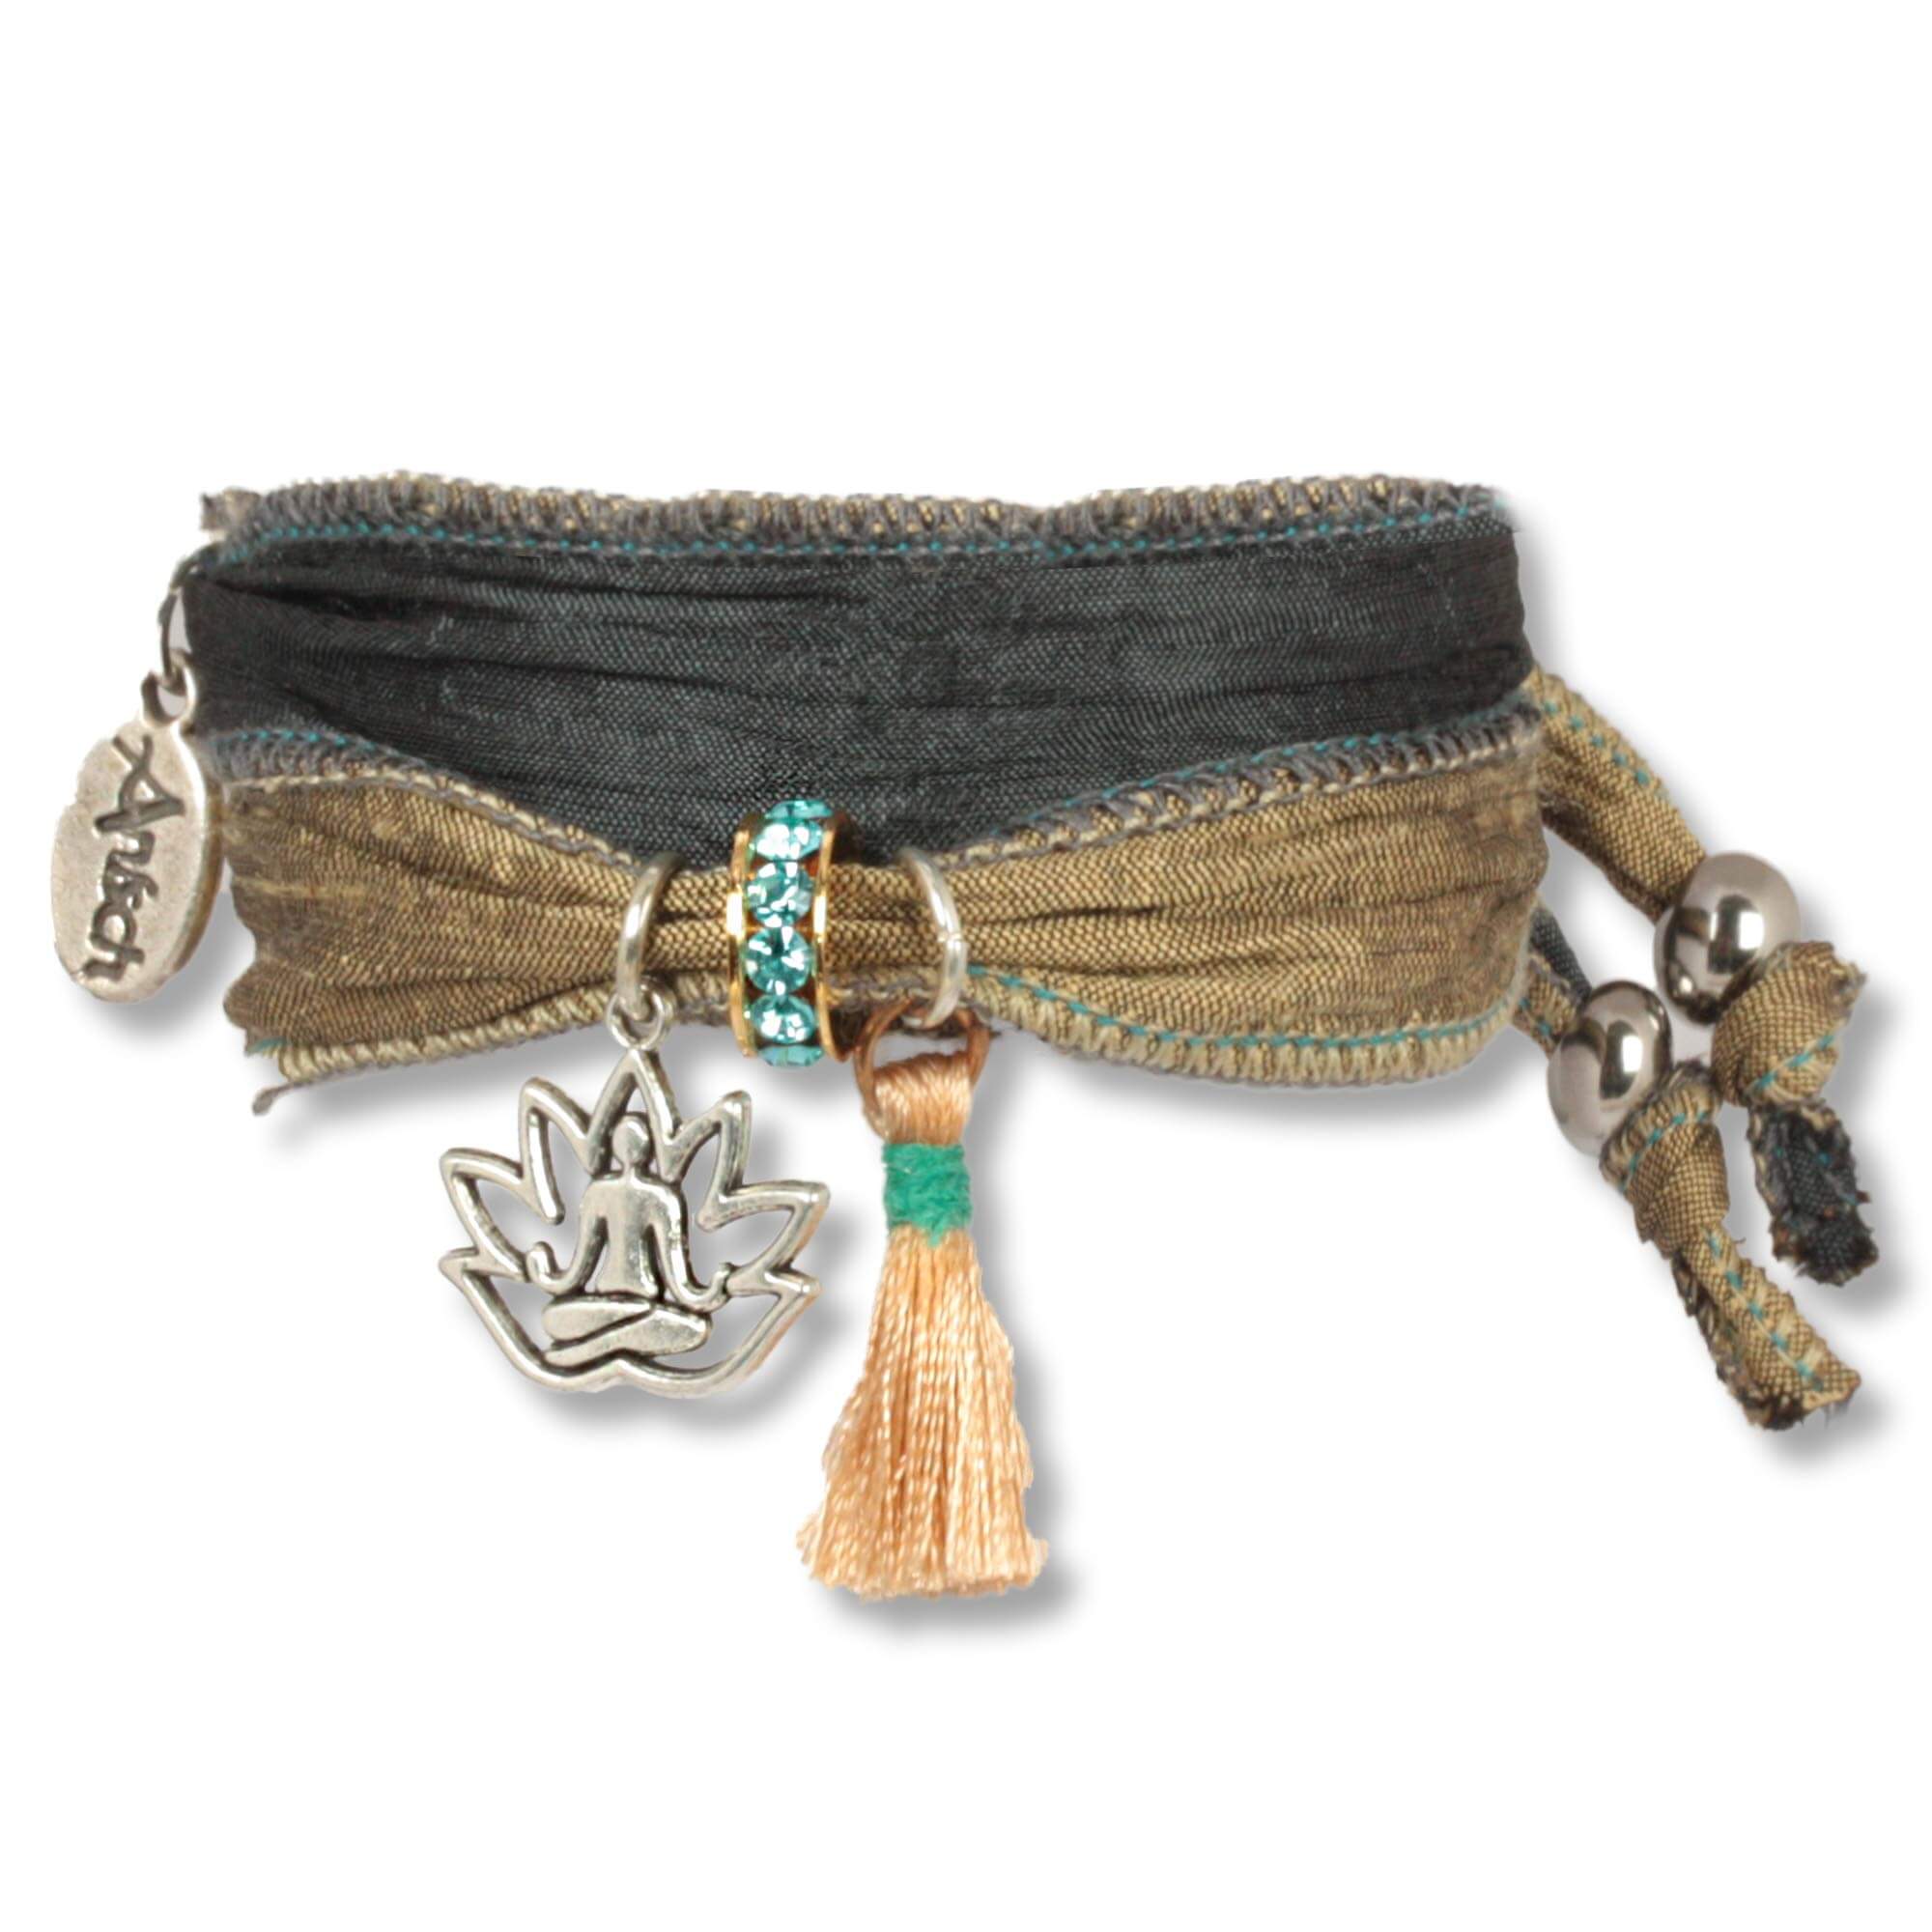 Handgefertigtes Stoffarmband aus Saris und Seidenstoffen in olive grün und anthrazit. Verziert mit einer metallenen Lotusblume, die einen meditierenden Buddha zeigt, einer rosé Seidenquaste, einem Rondell besetzt mit tschechischen Kristallen. Anísch